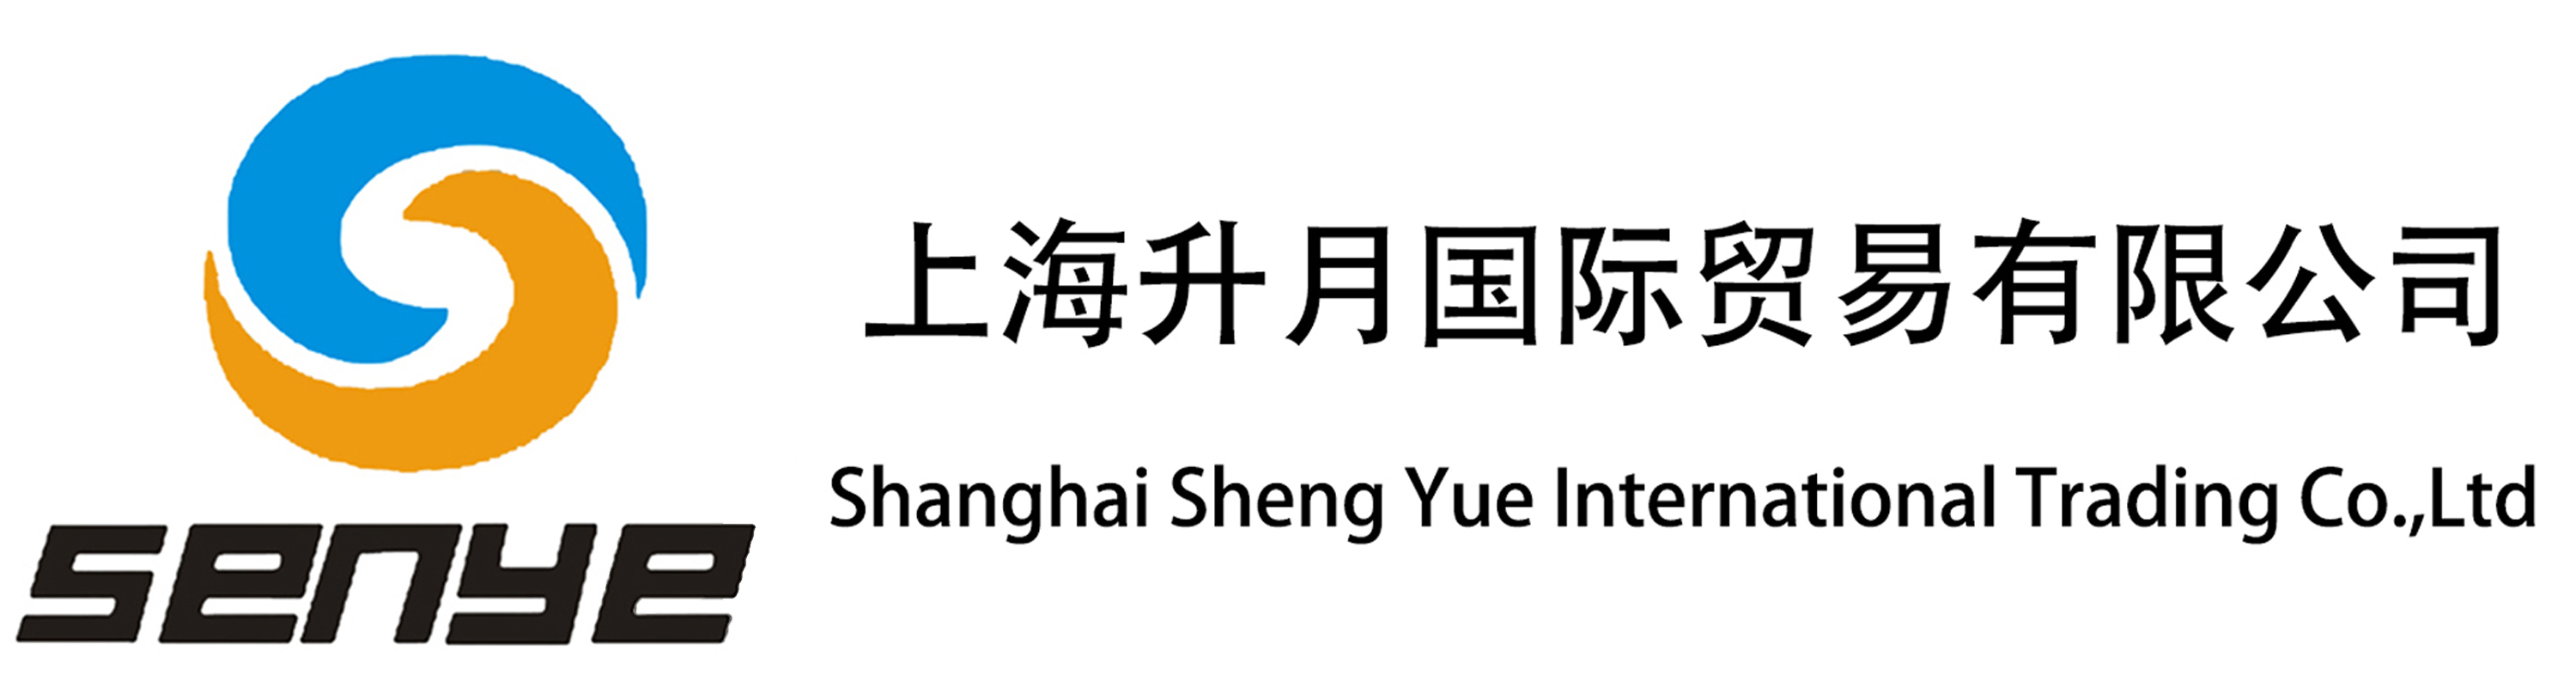 上海升月国际贸易有限公司